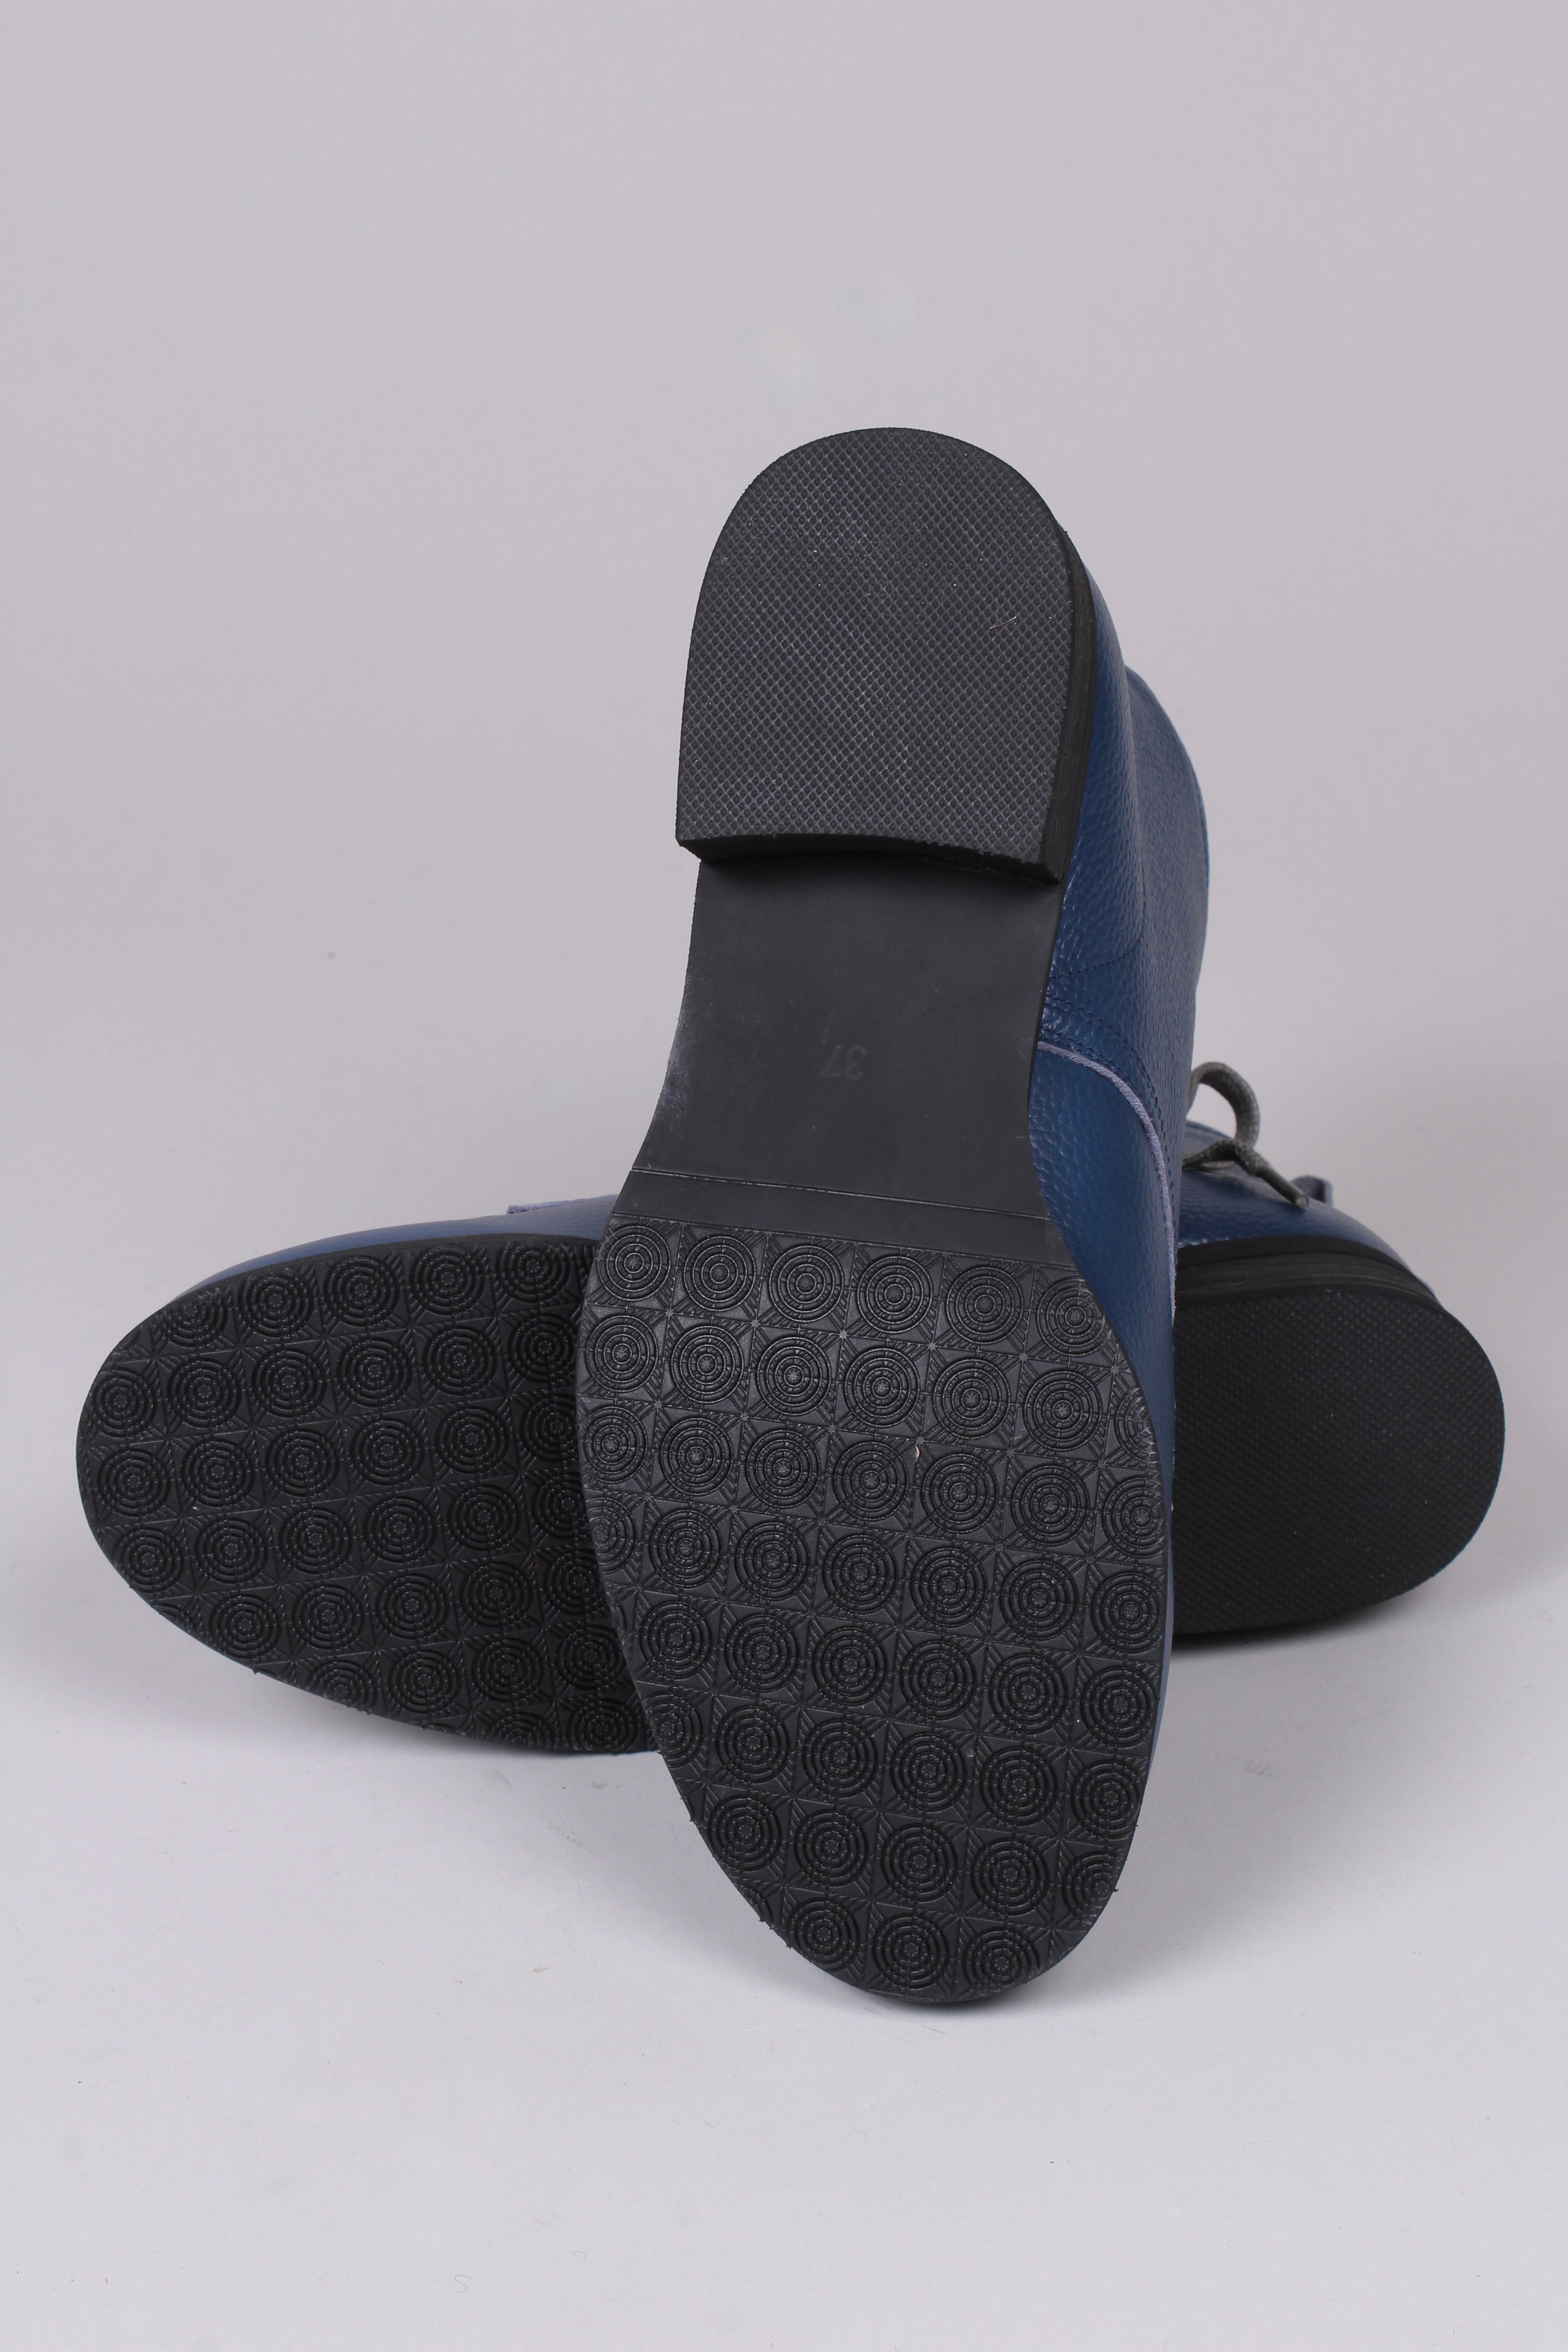 1940er style mokkasinstøvler med lammeskind- Blå - Rita